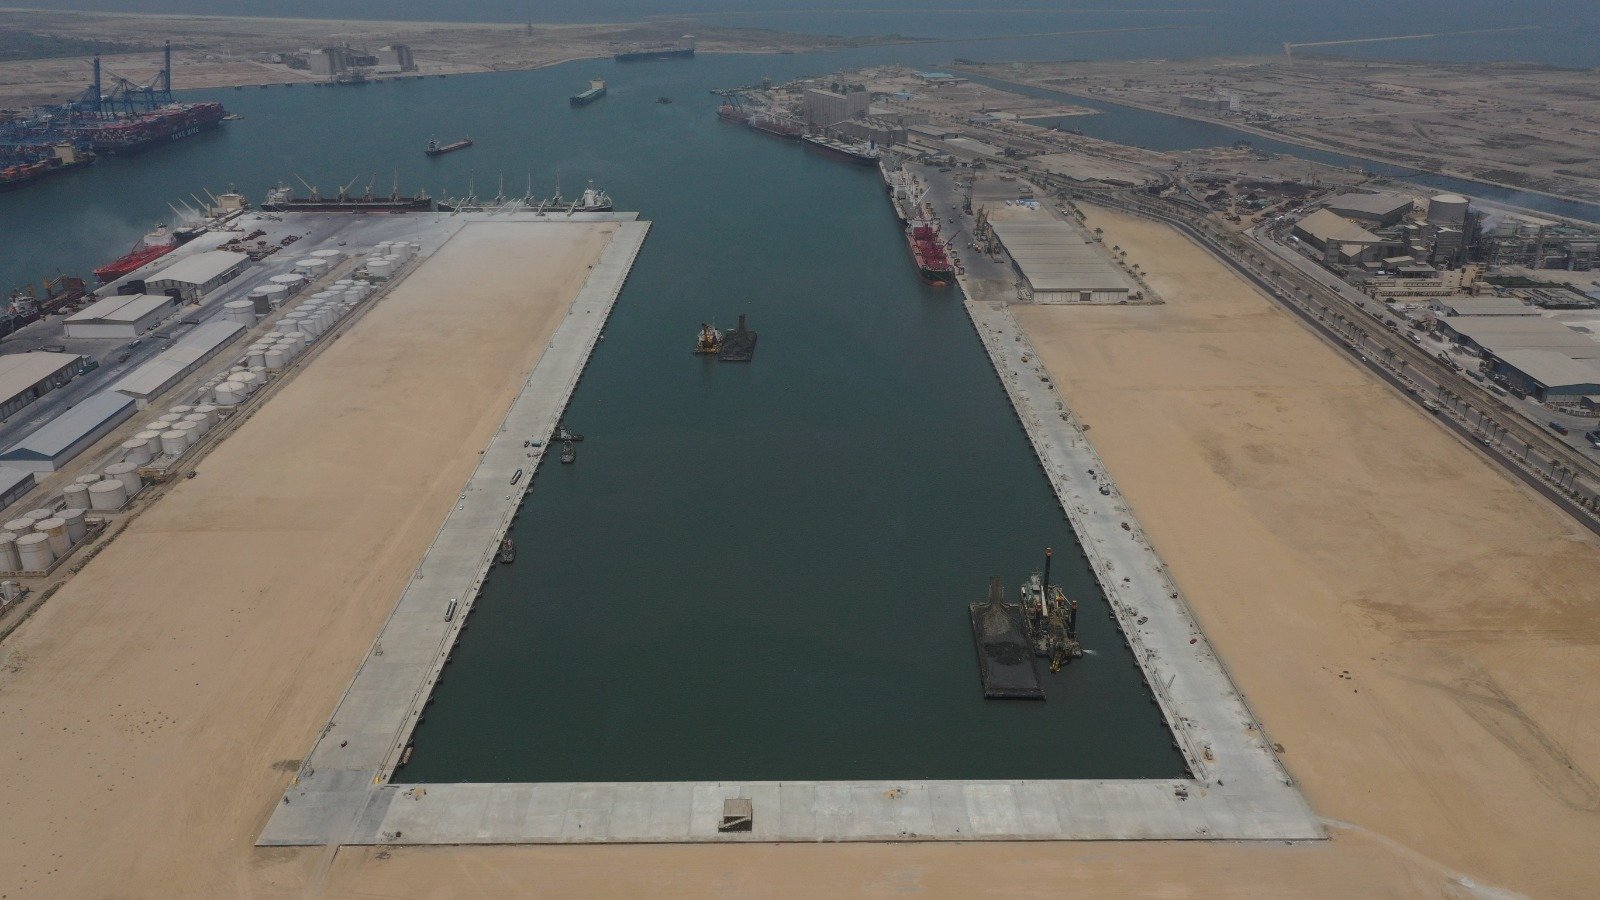 تنفيذ مشروع محطة حاويات تحيا مصر1 بميناء دمياط